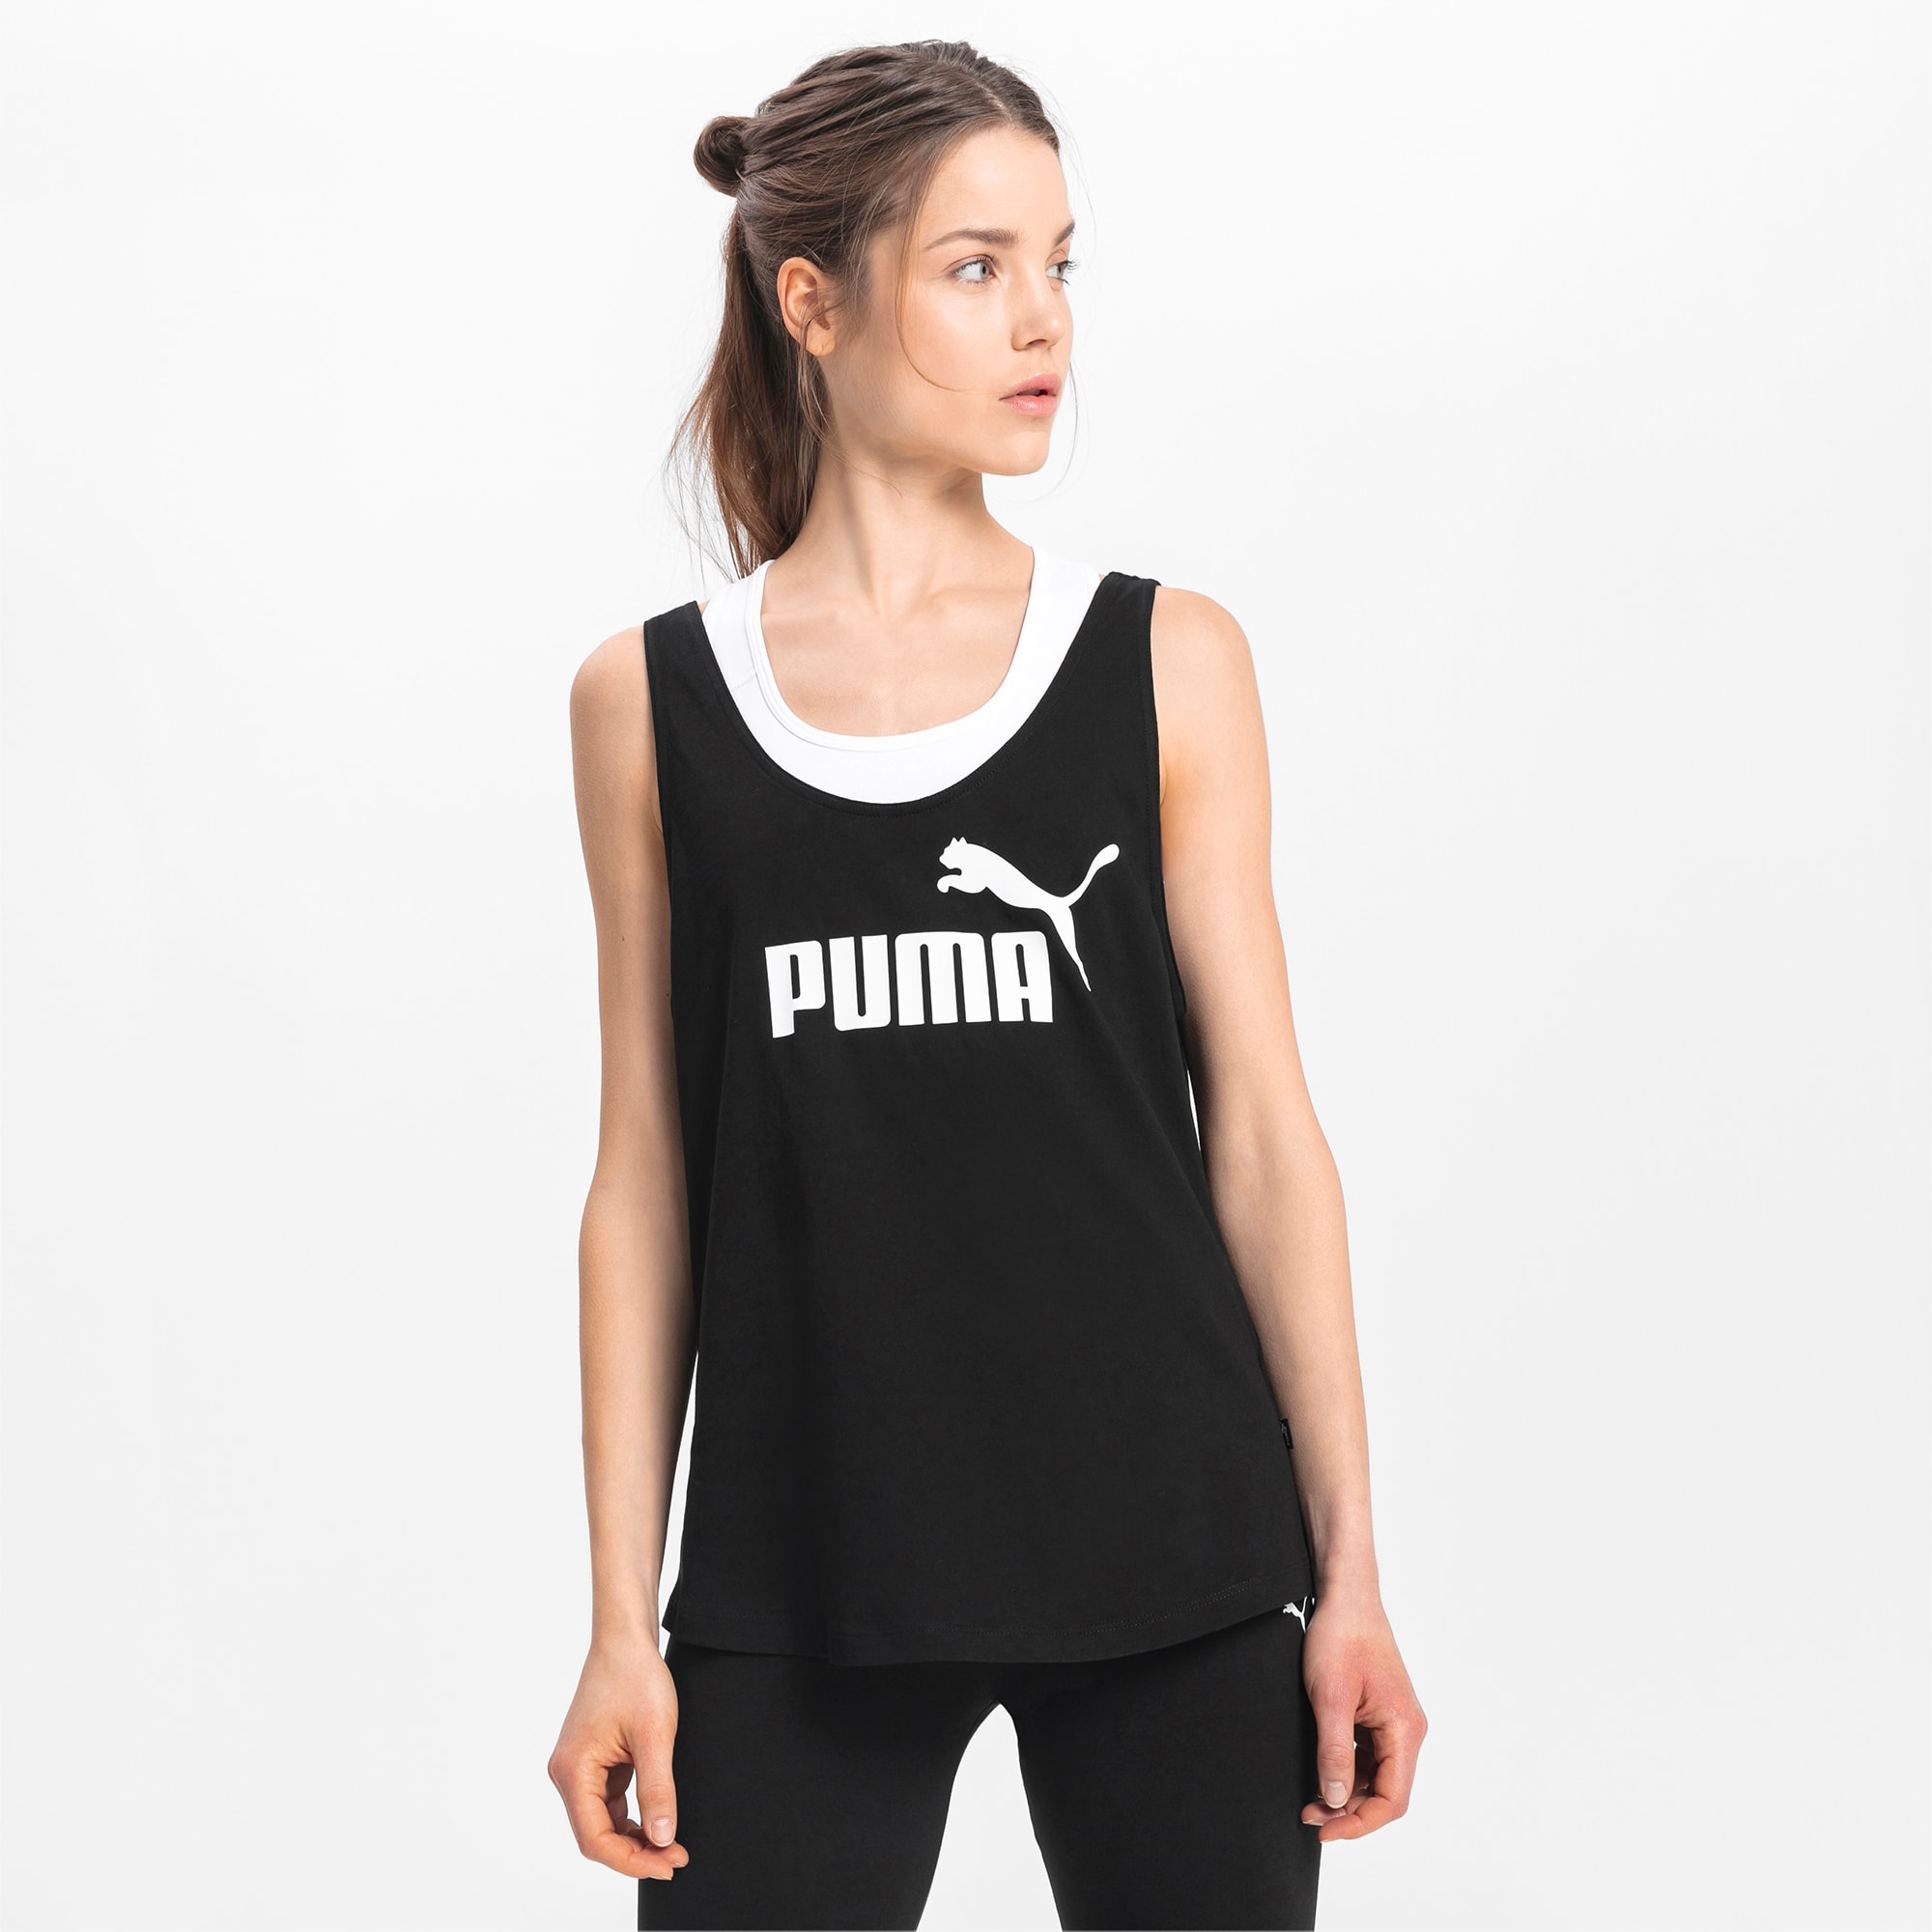 puma women's tank tops